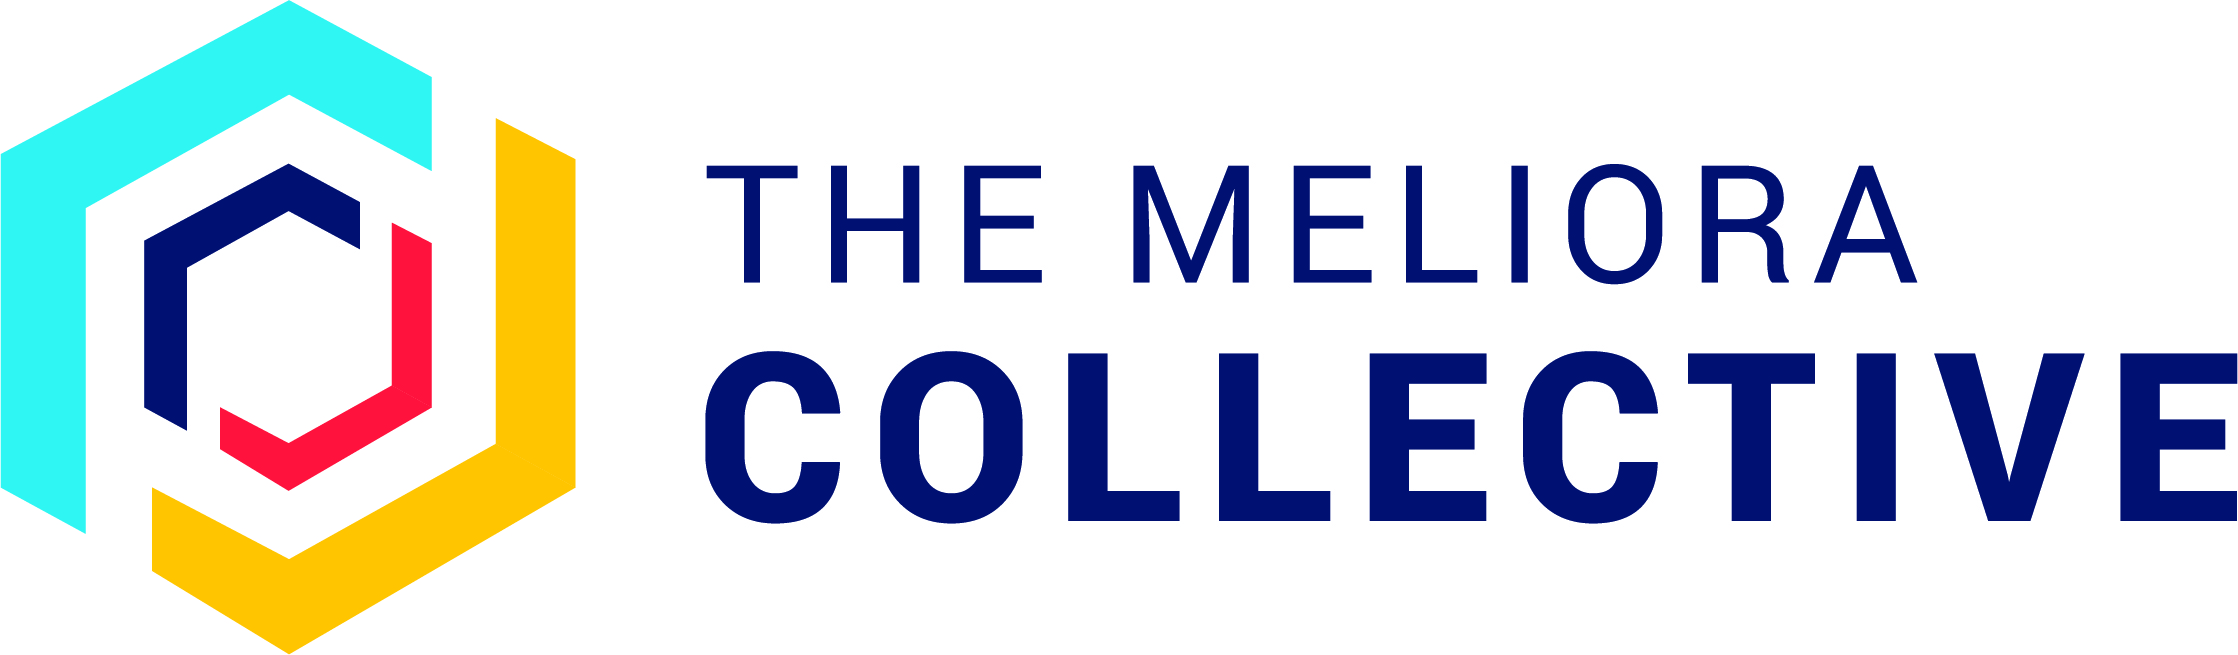 The Meliora Collective logo.